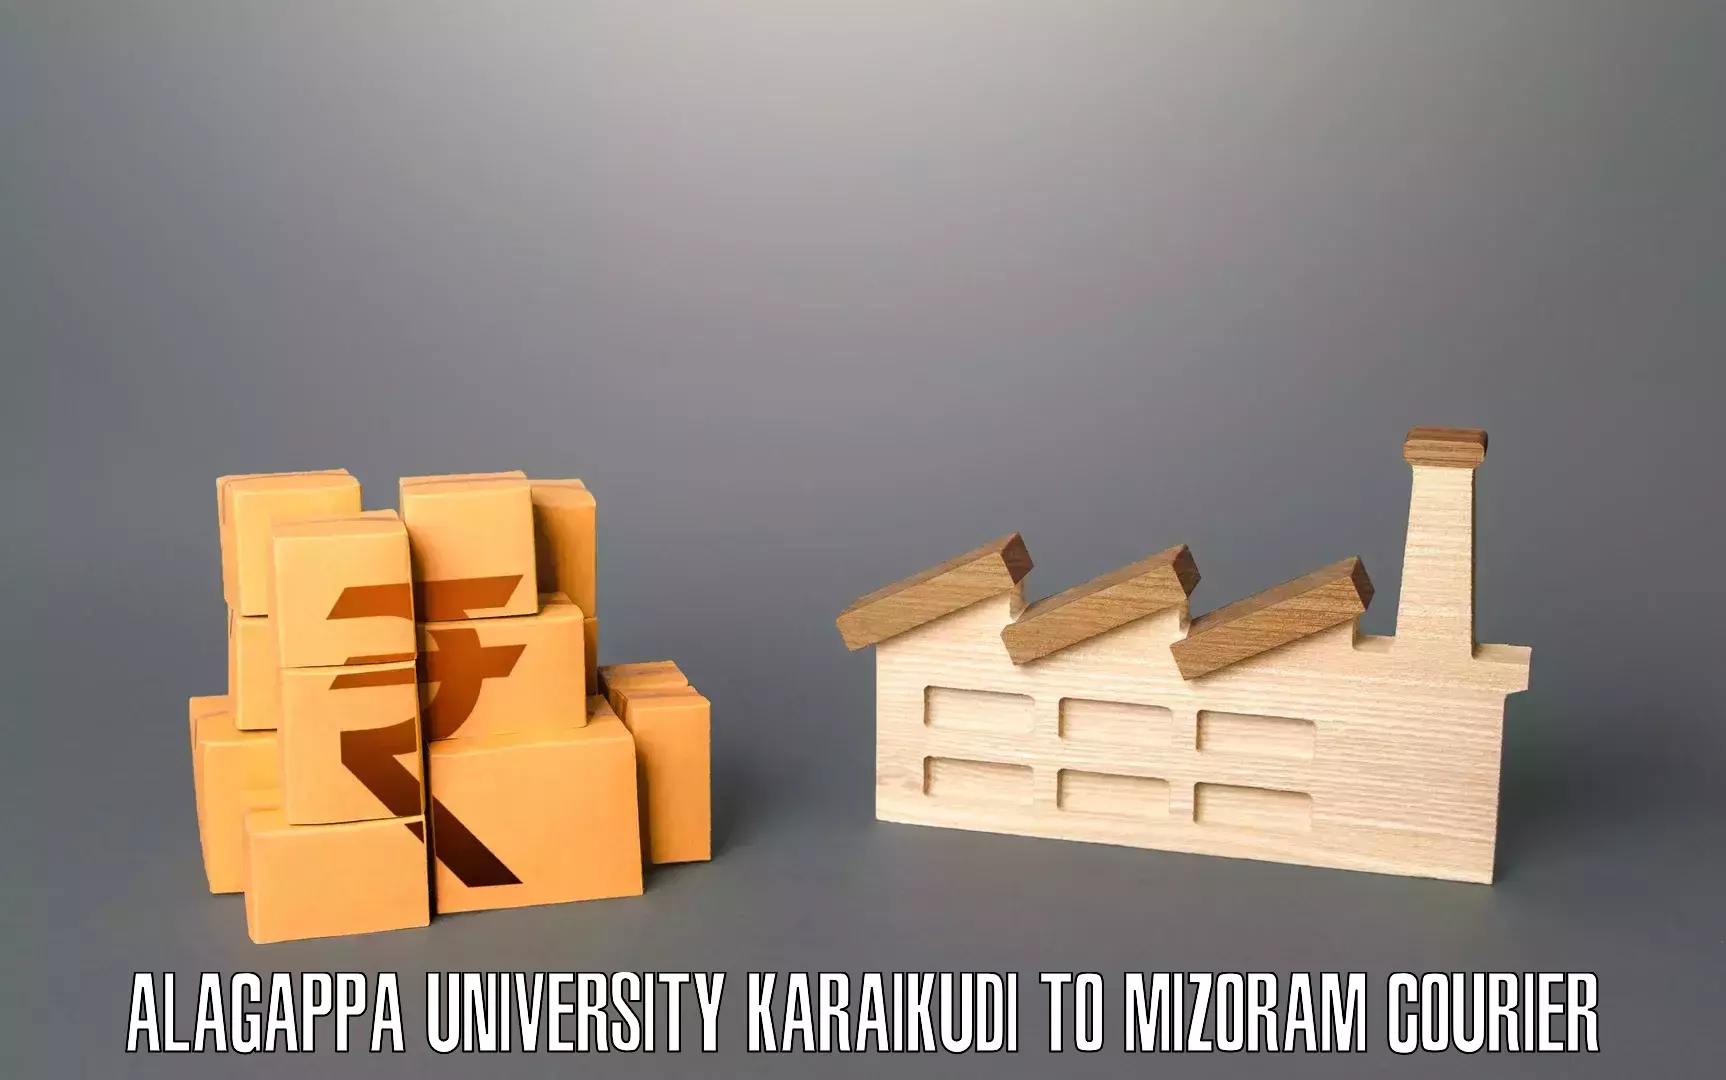 Furniture moving service Alagappa University Karaikudi to Aizawl